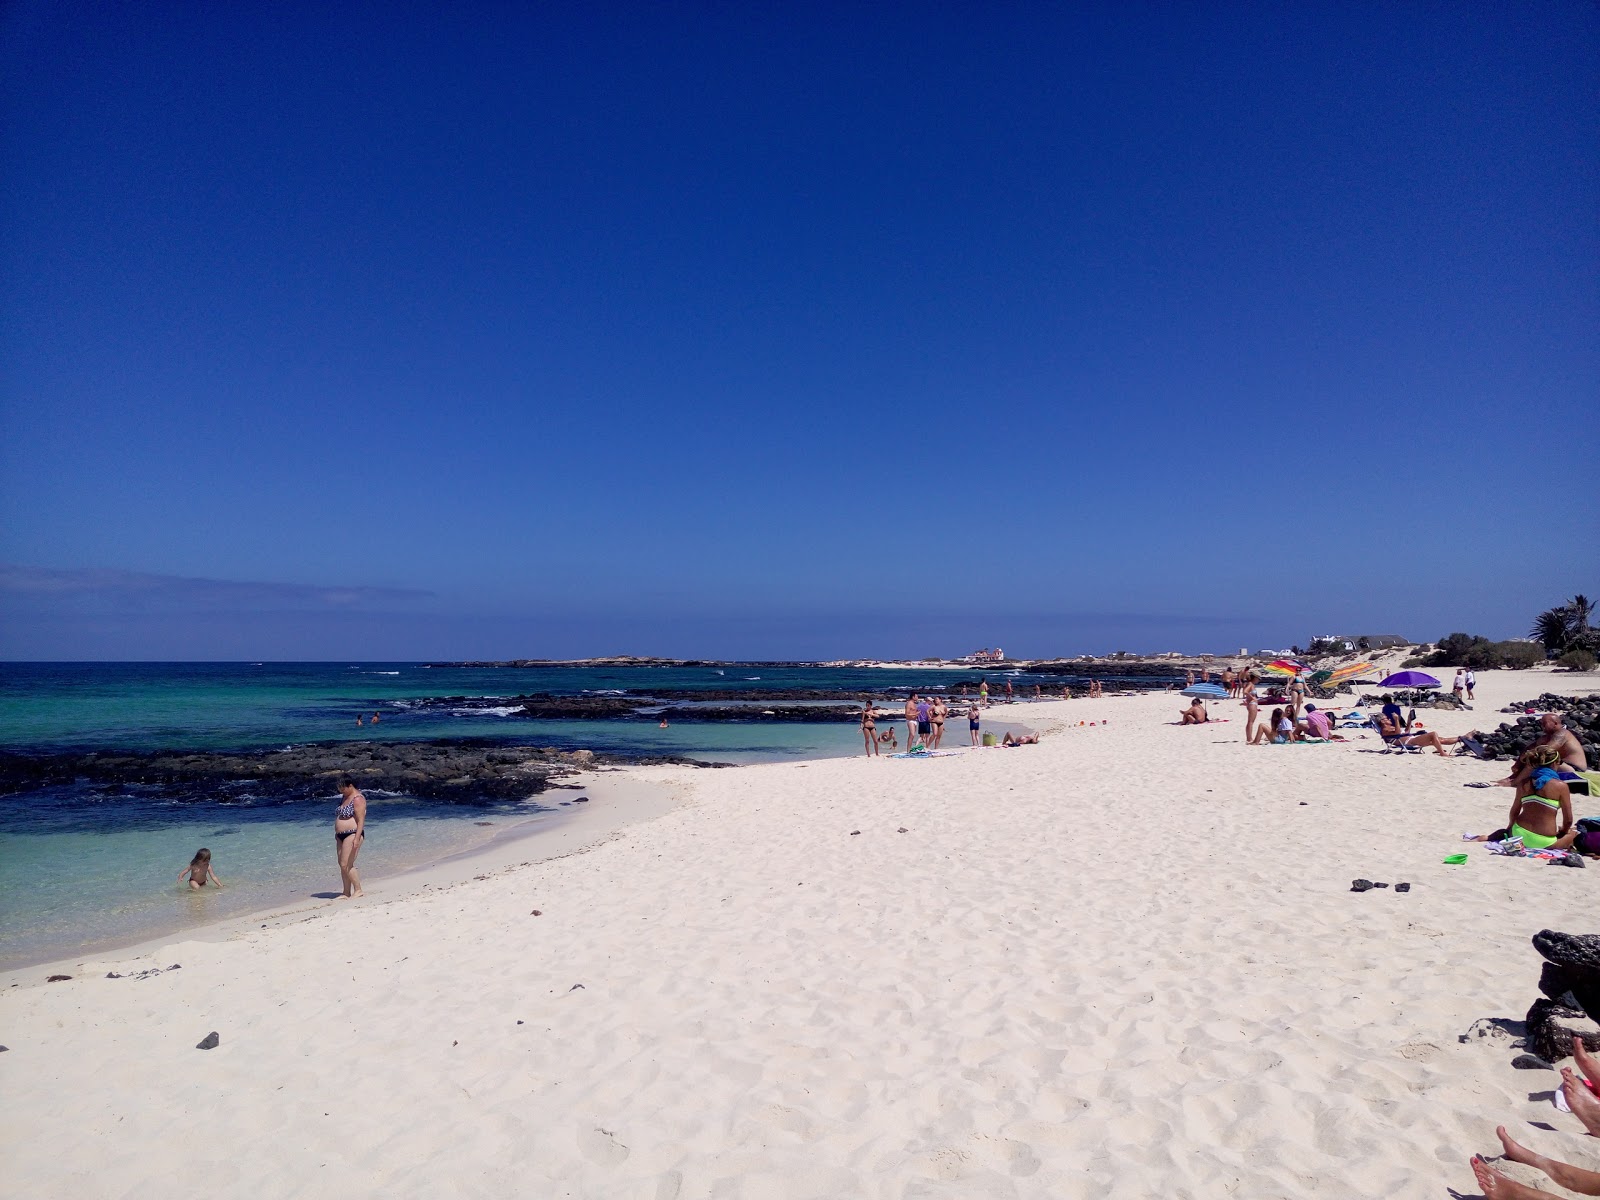 Cotillo Plajı'in fotoğrafı geniş plaj ile birlikte